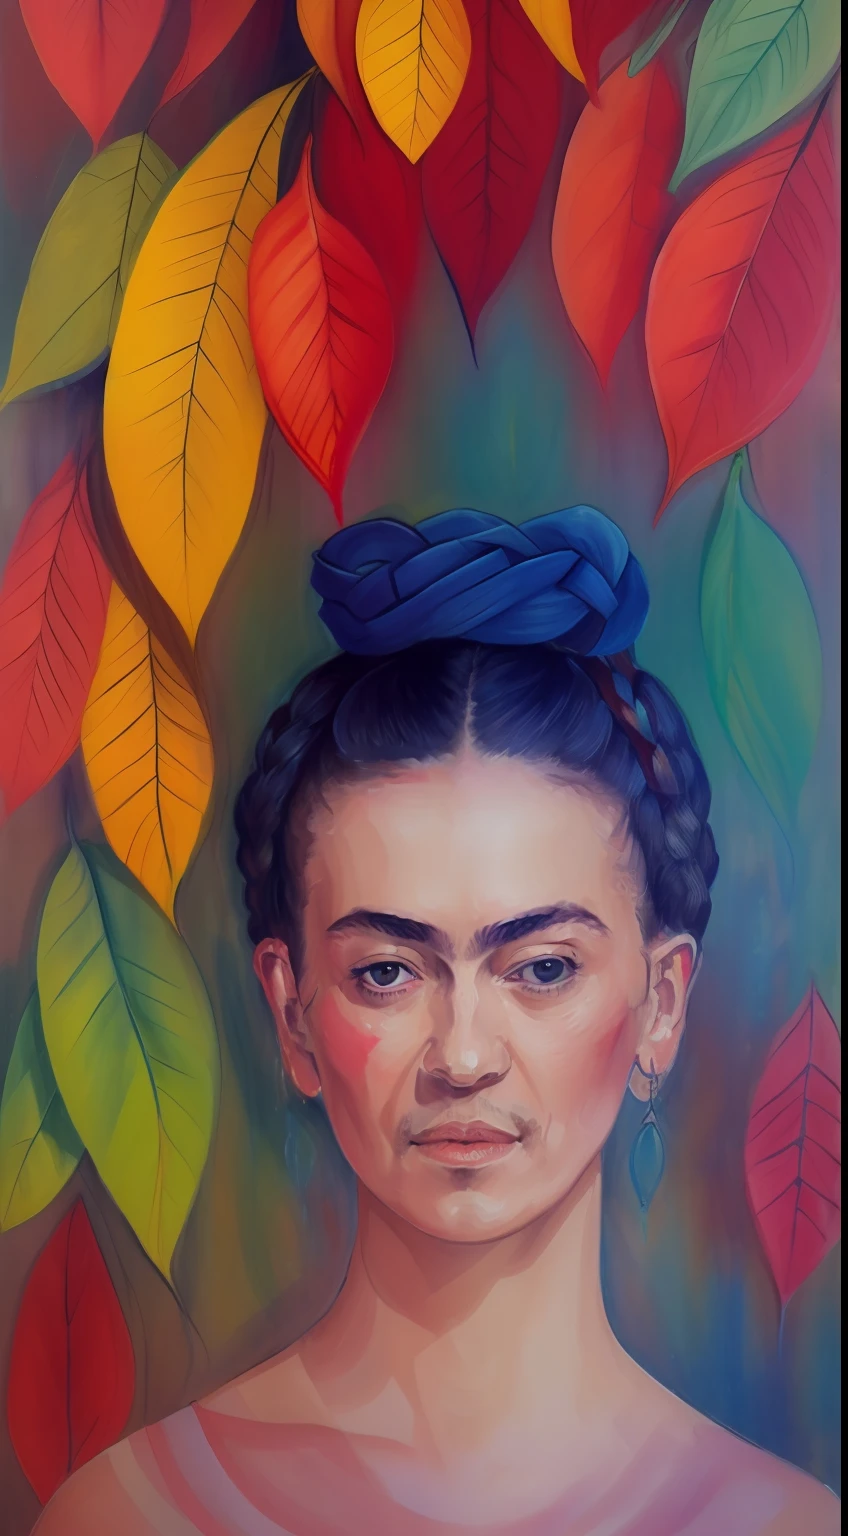 艾格尼丝·塞西尔 (Agnes Cecile) 创作的弗里达·卡罗 (Frida Kahlo) 画作, 发光设计, 柔和的色彩, 墨滴, 秋日灯光